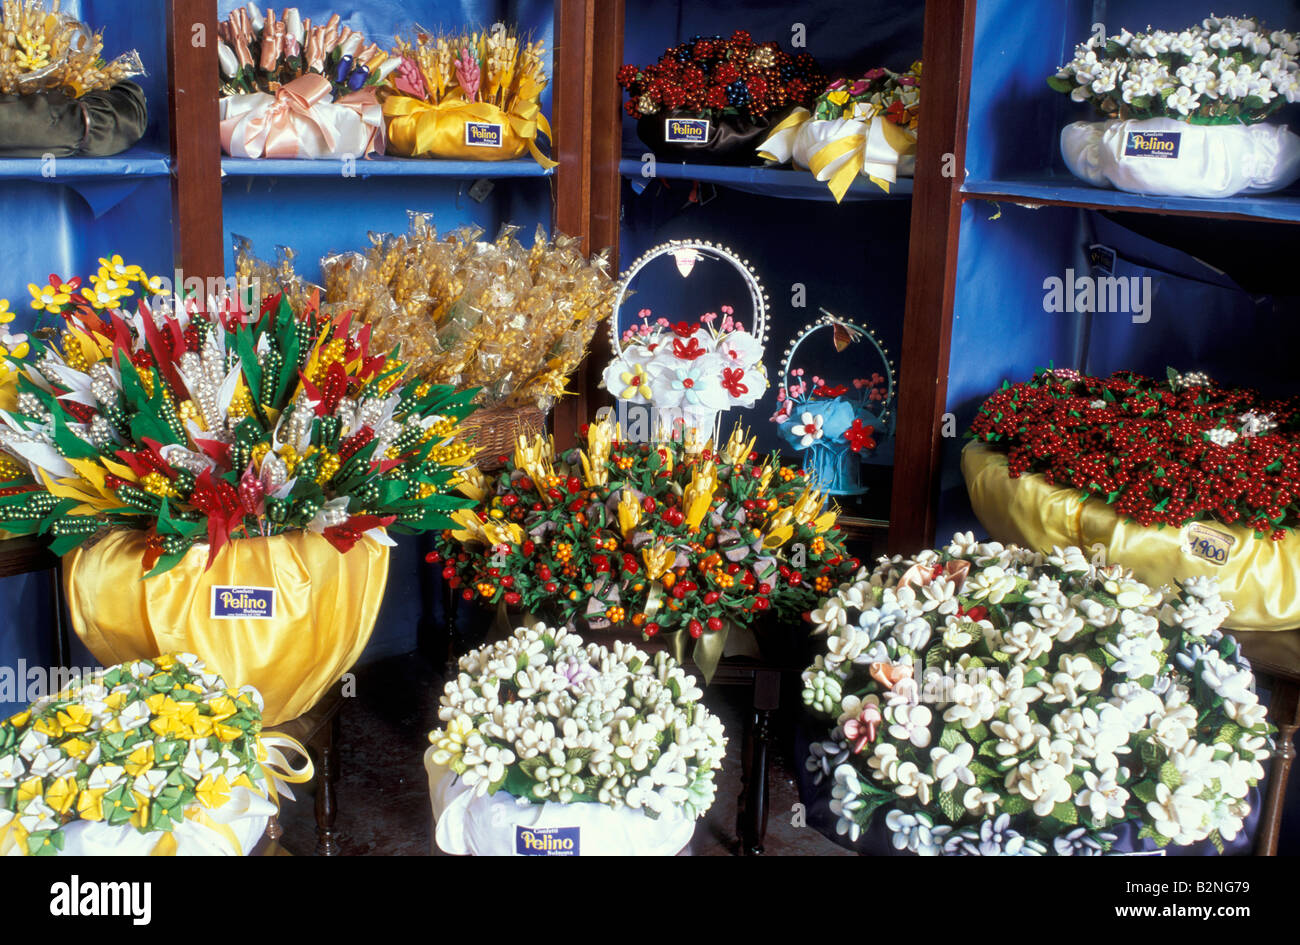 Pelino confetti, Sulmona, Italia Foto stock - Alamy